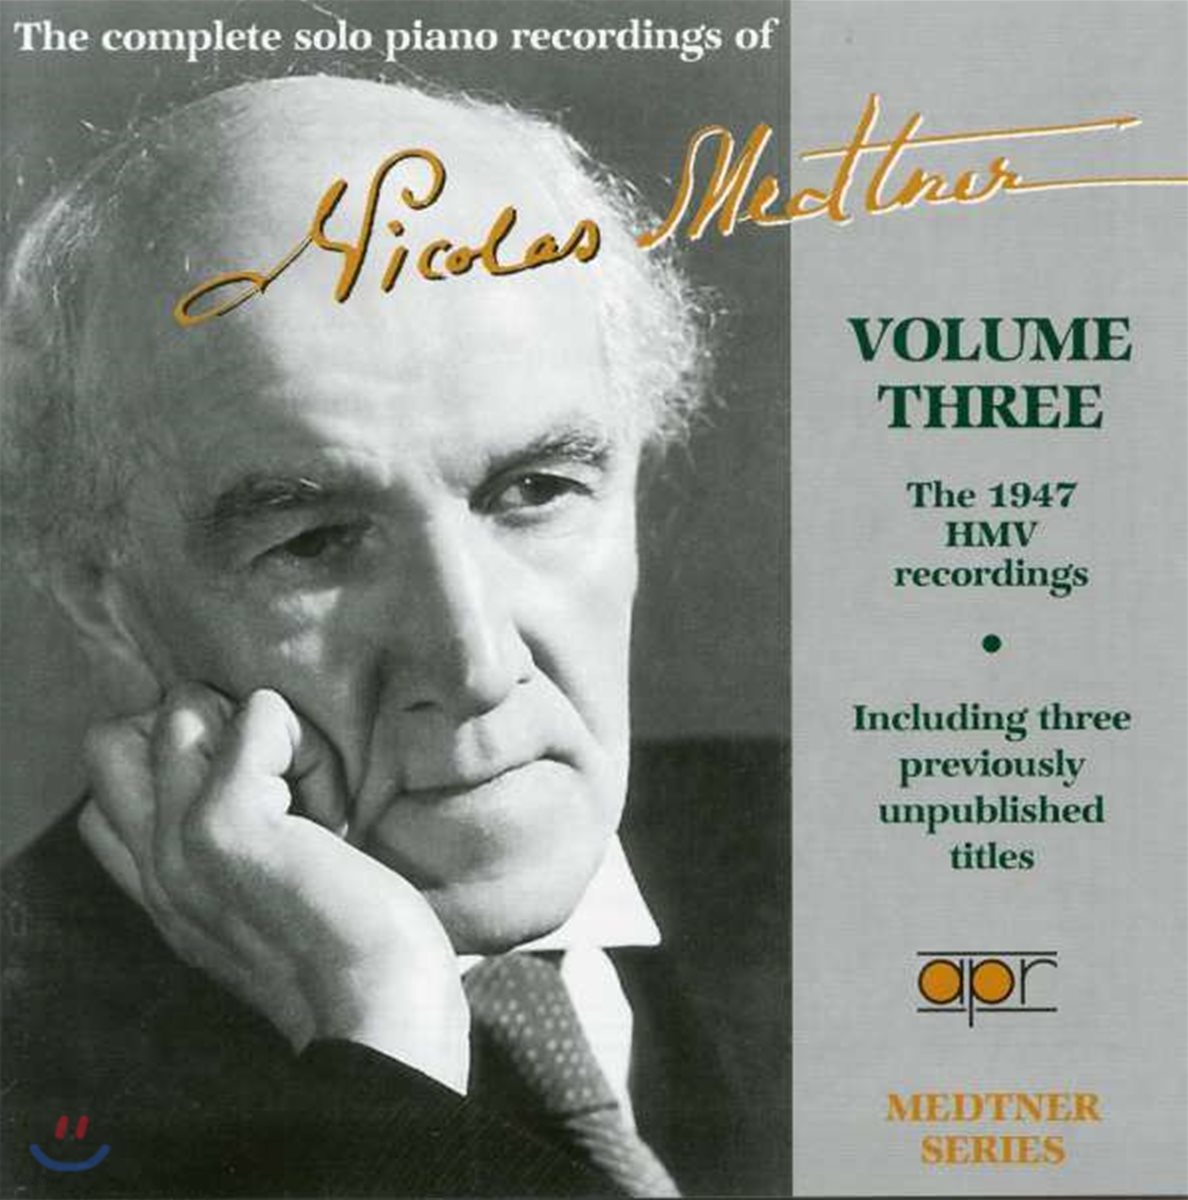 니콜라스 매트너 독주 피아노 레코딩 3권 (The complete piano recordings of Nicolas Medtner Vol. 3)